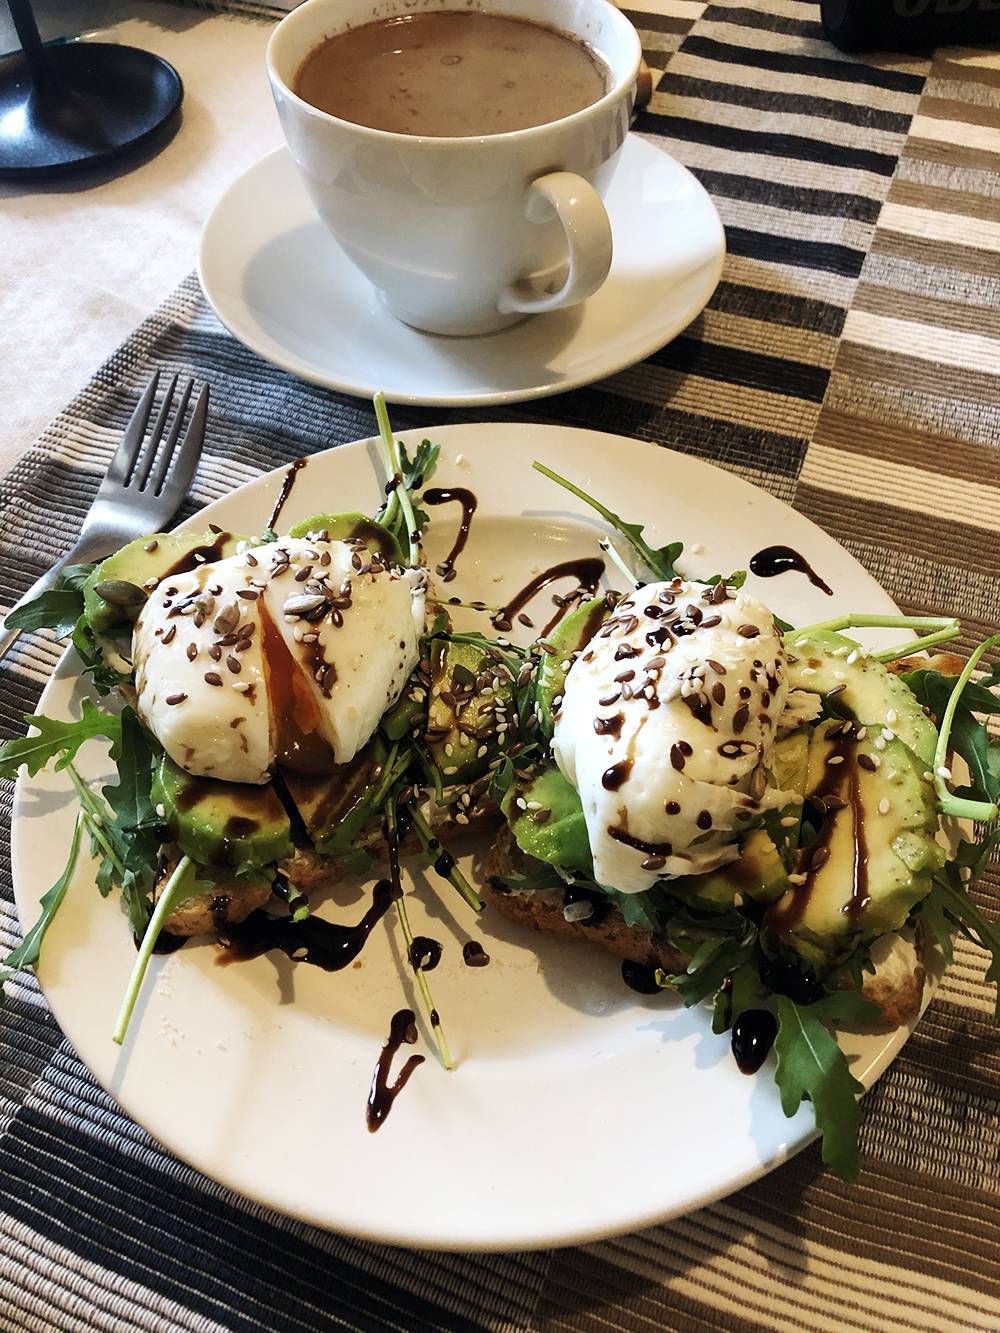 Завтрак: тосты с авокадо, яйцами пашот и творожным сыром, кофе